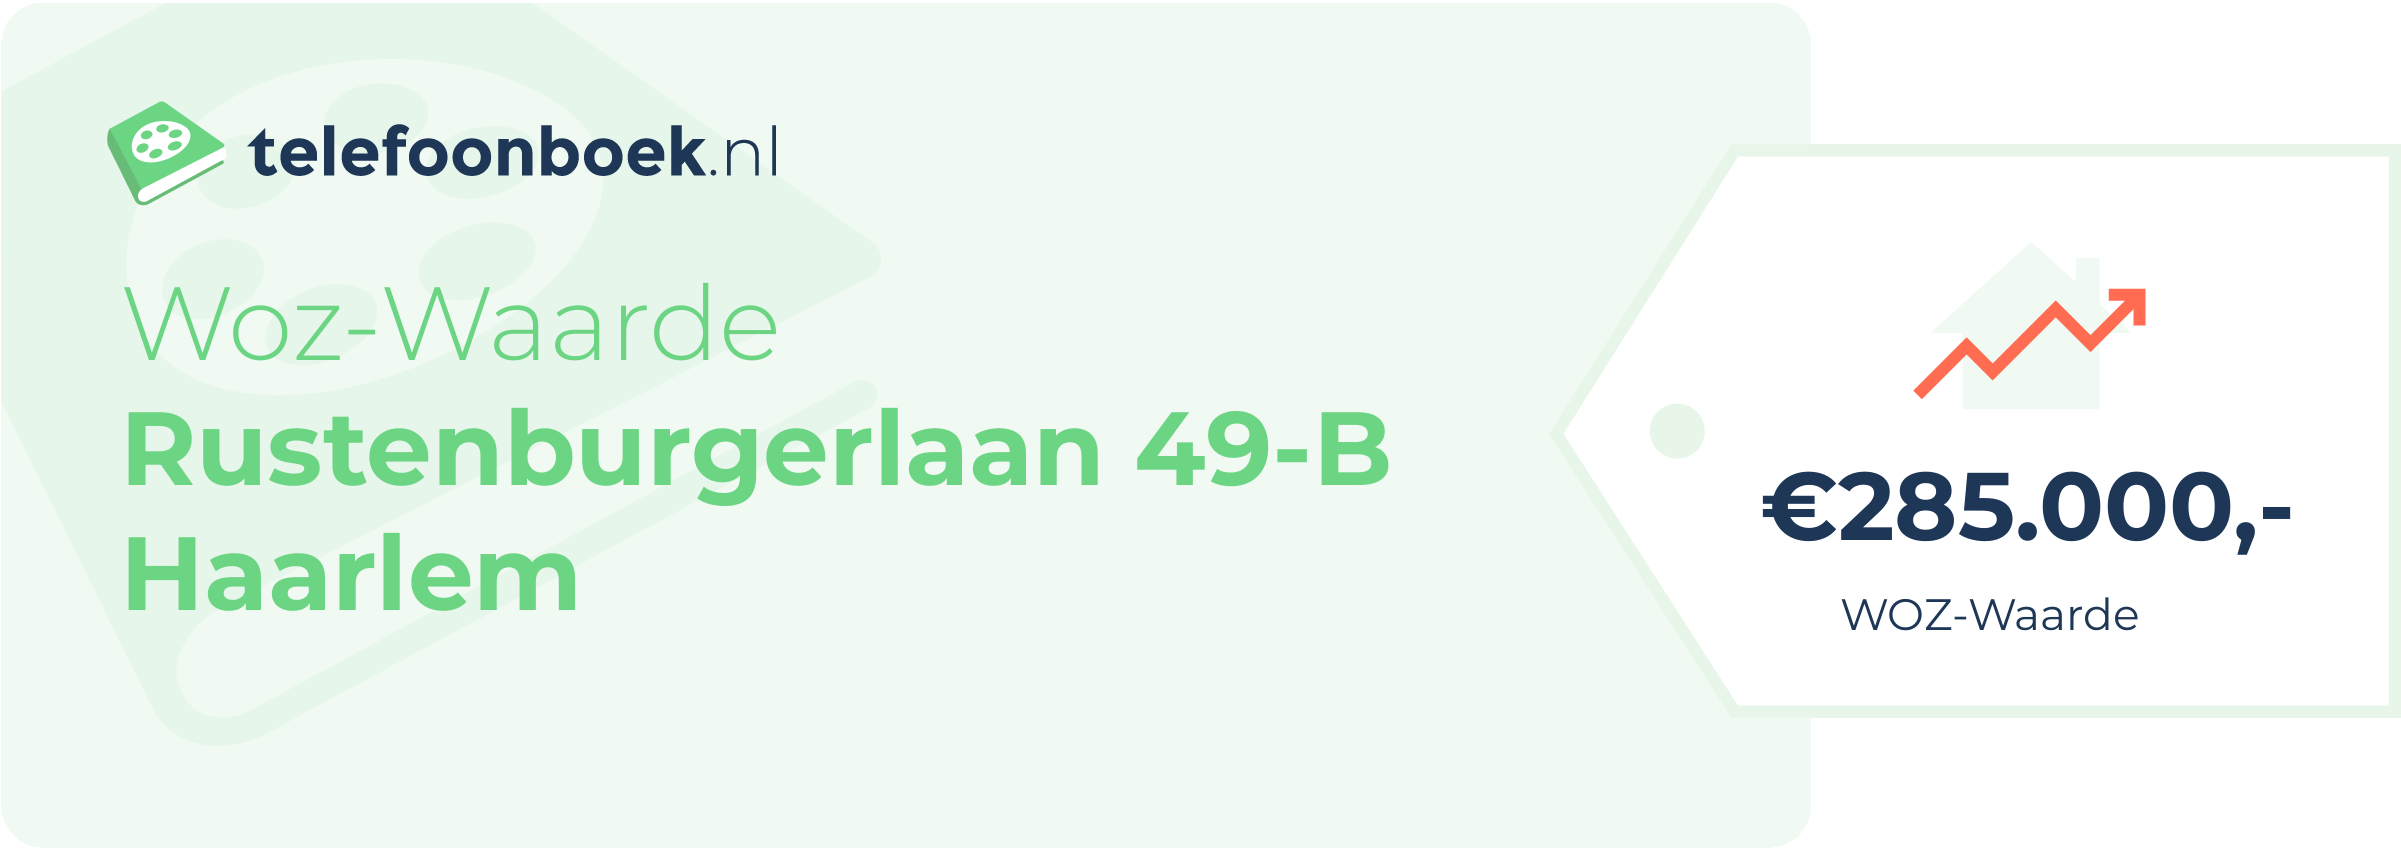 WOZ-waarde Rustenburgerlaan 49-B Haarlem